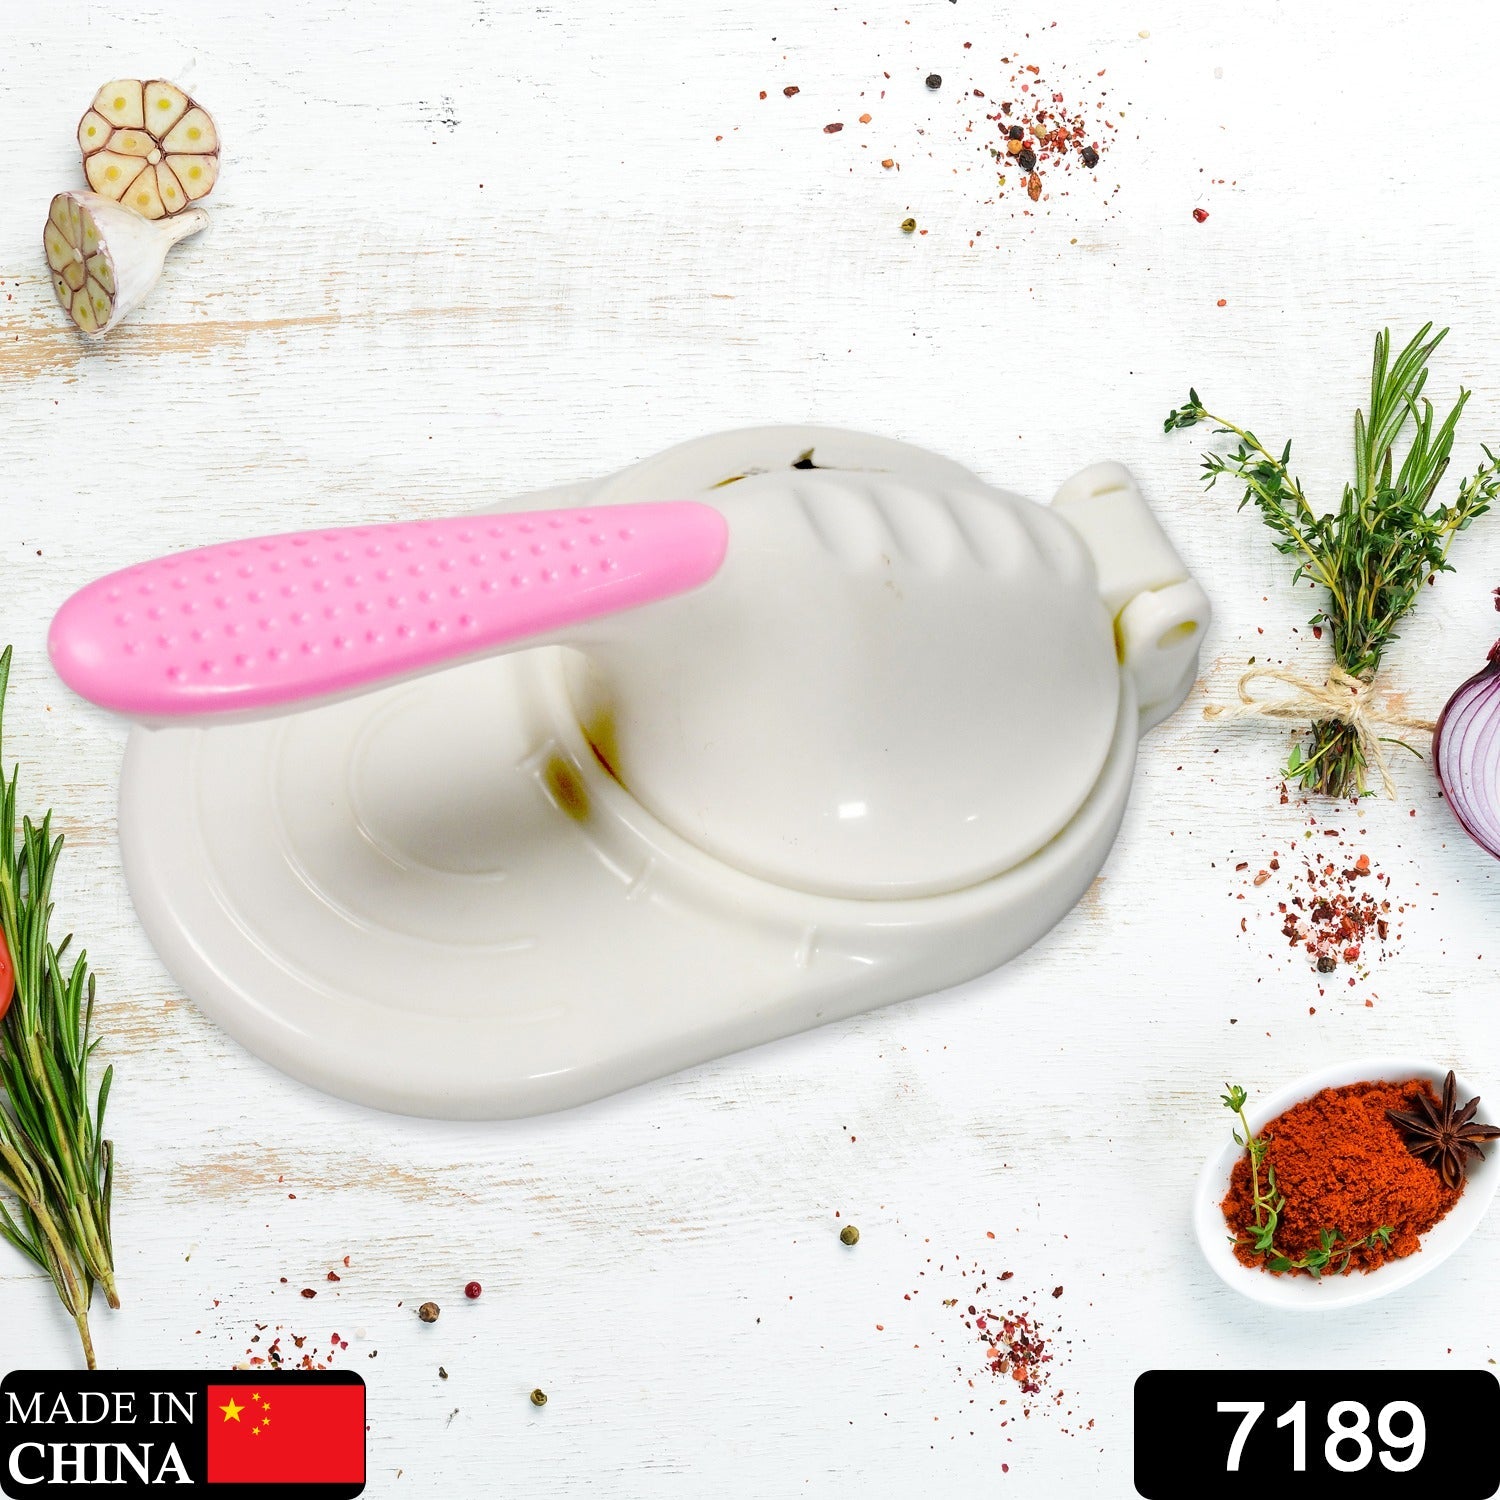 7189 Manual Dumpling Machine | Puri Press Dumpling Machine Dough Dumplings | Reusable Mini Kitchen Gadget DeoDap